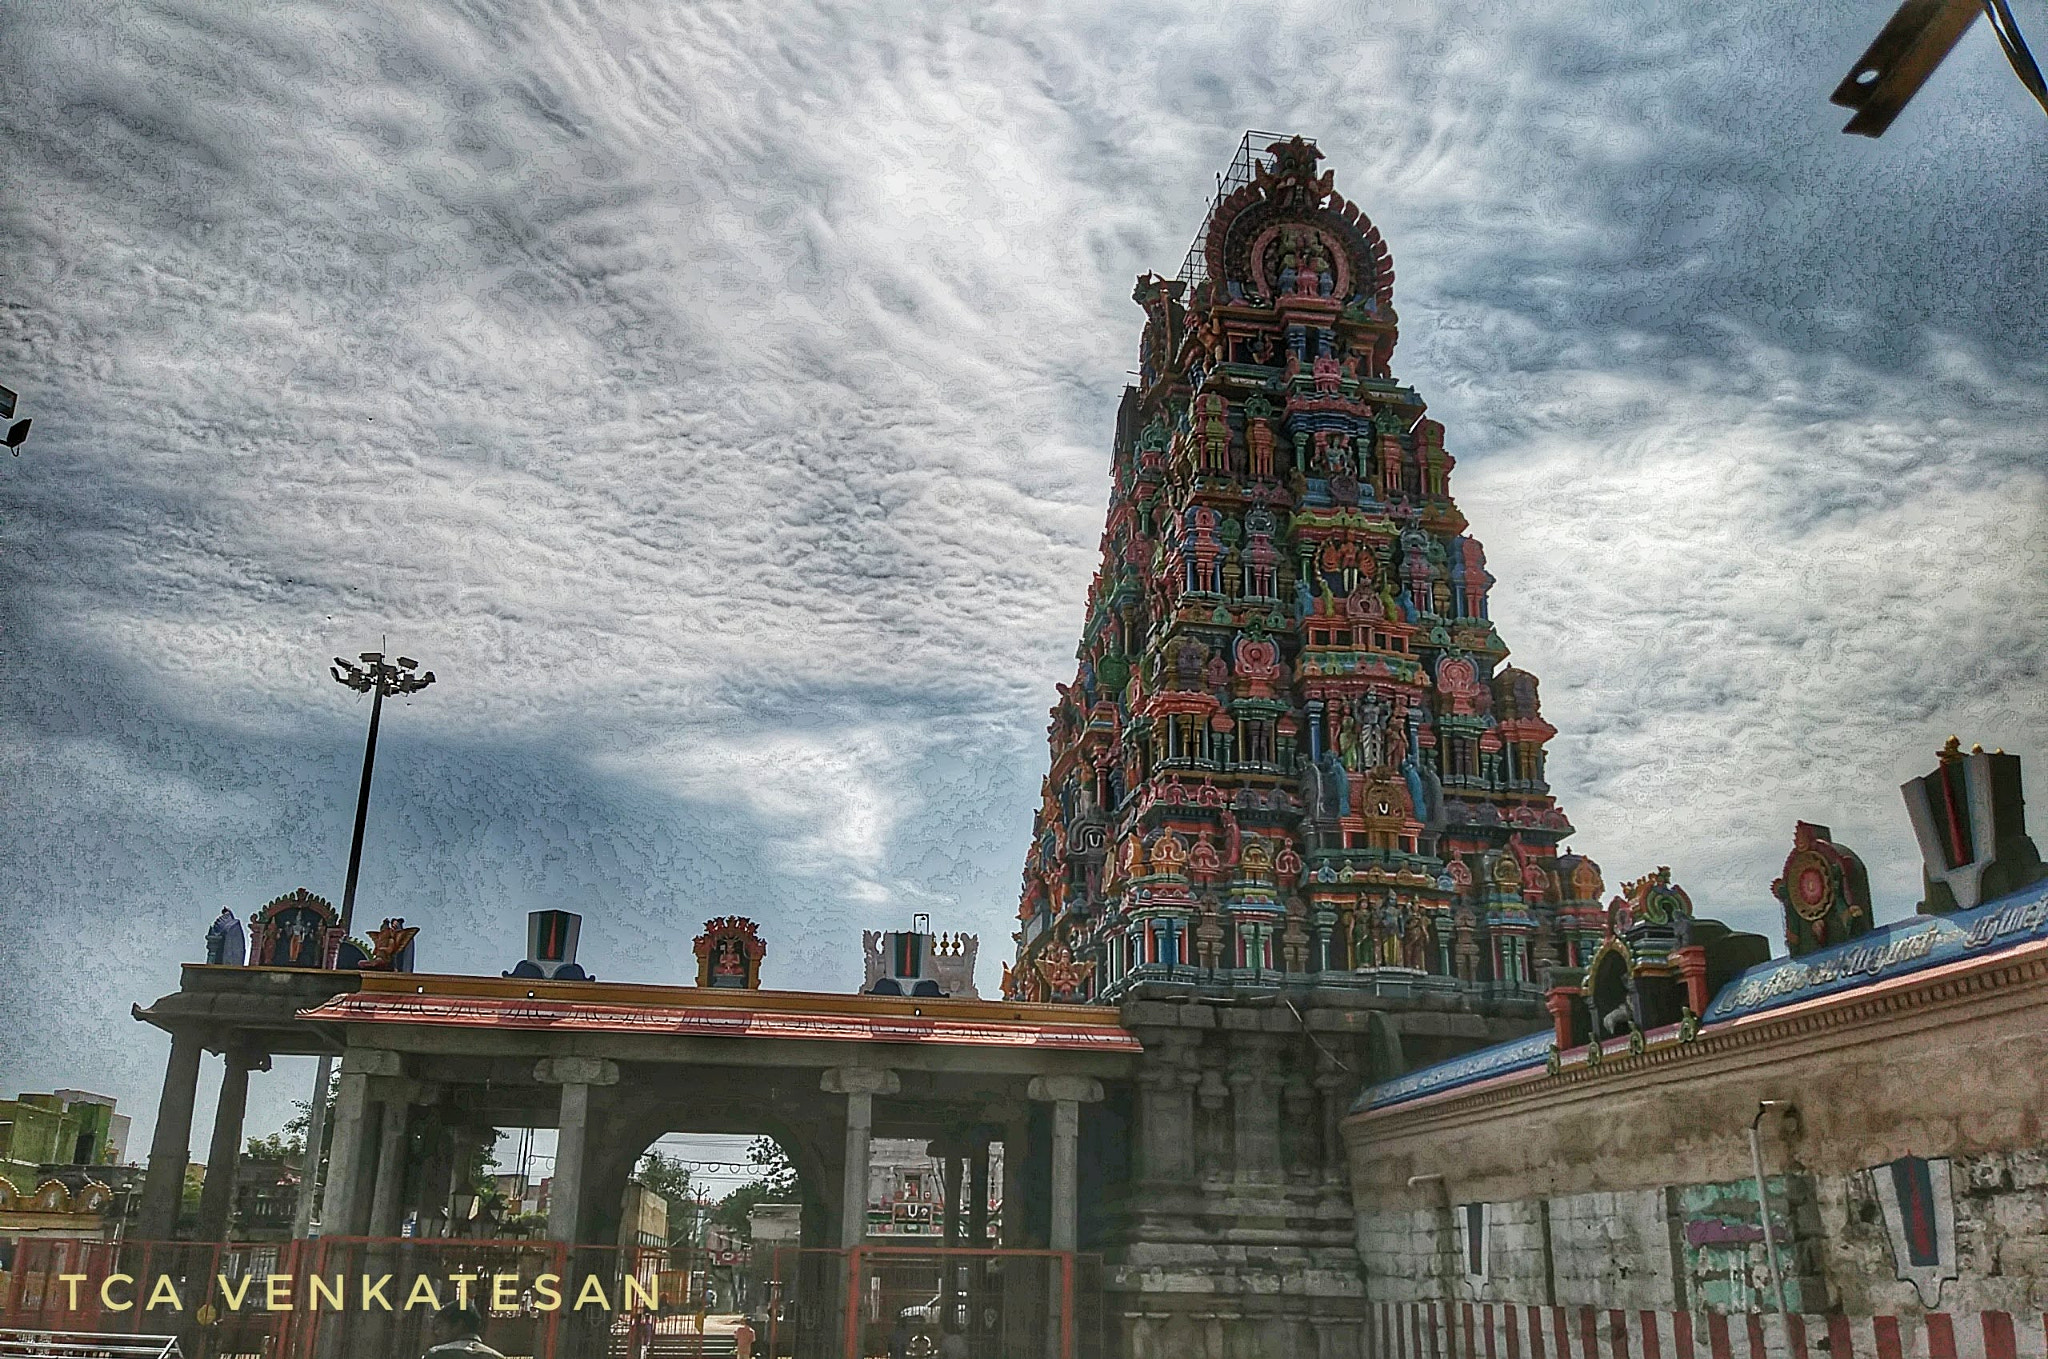 LG K20 V sample photo. Sriperumbudur temple photography